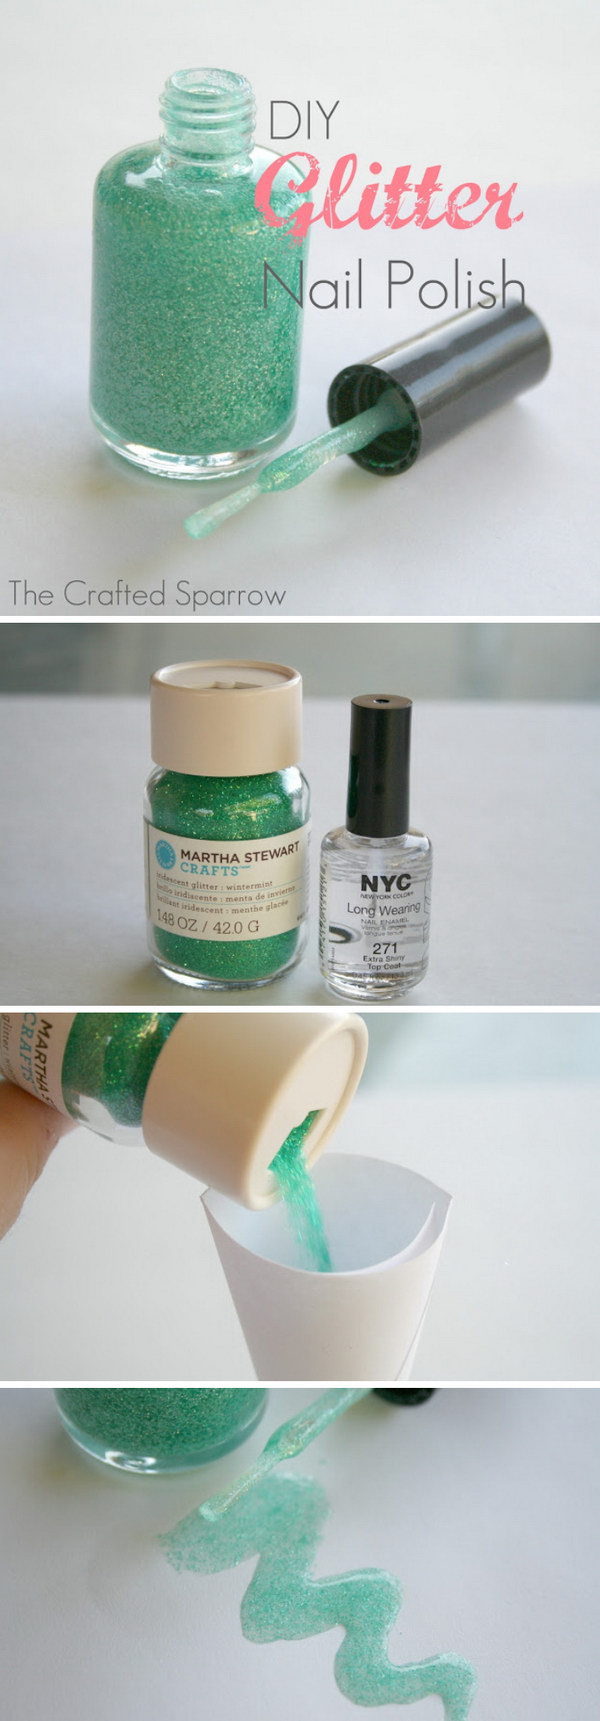 DIY Glitter Nail Polish. Mix a clear nail polish with craft glitter or an eye shadow make your own glitter nail polish! 